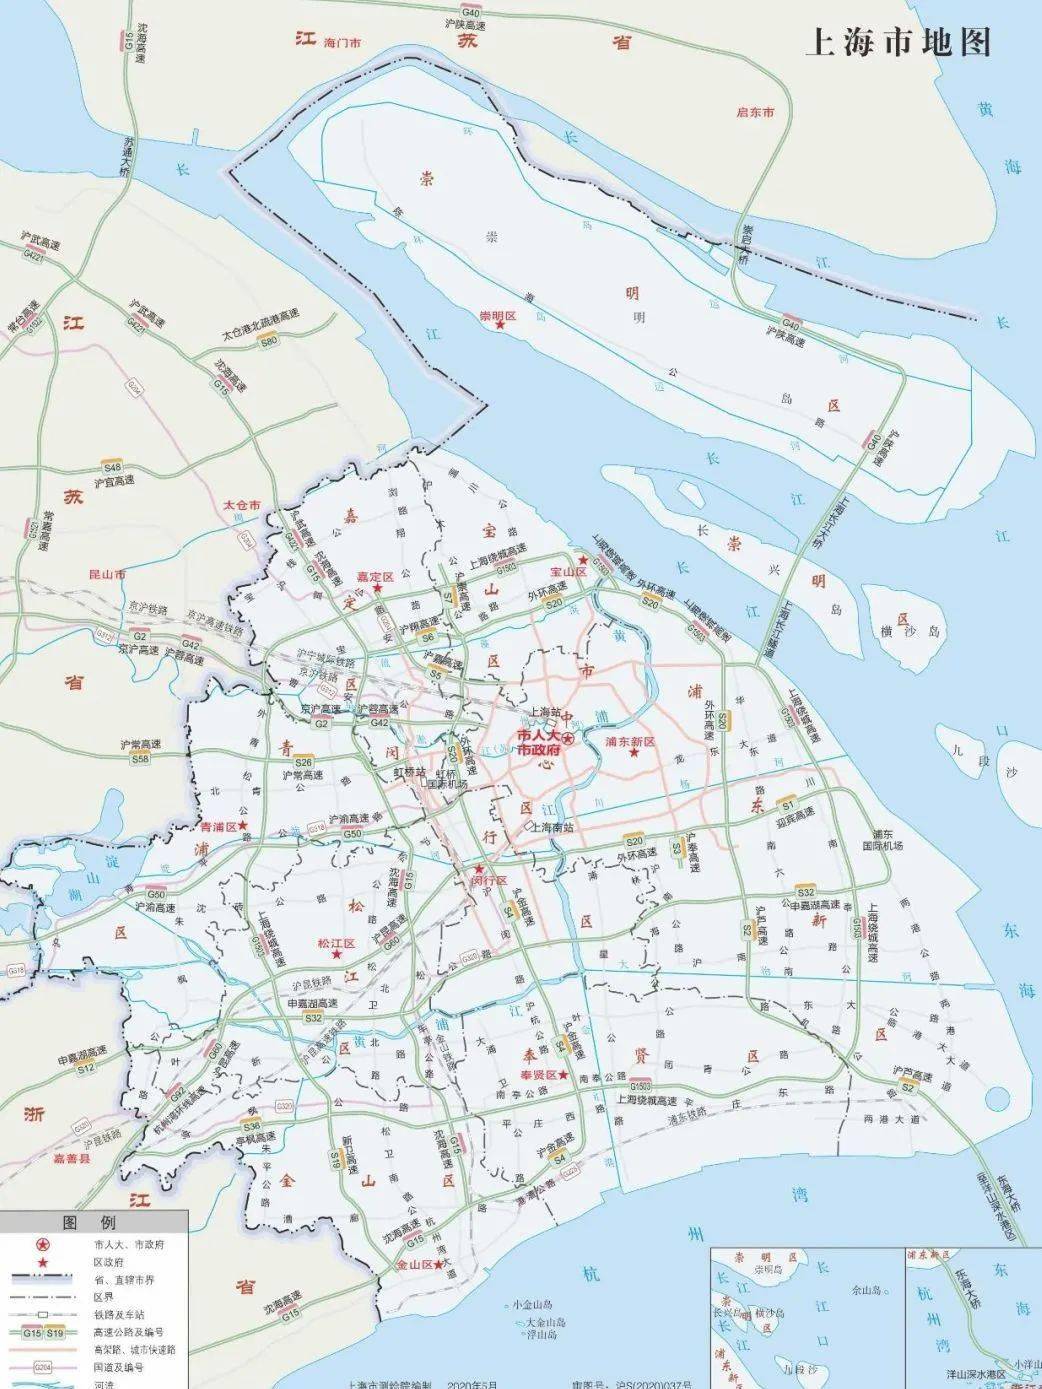 关注| 长三角标准地图公布,还有上海和16区标准地图在